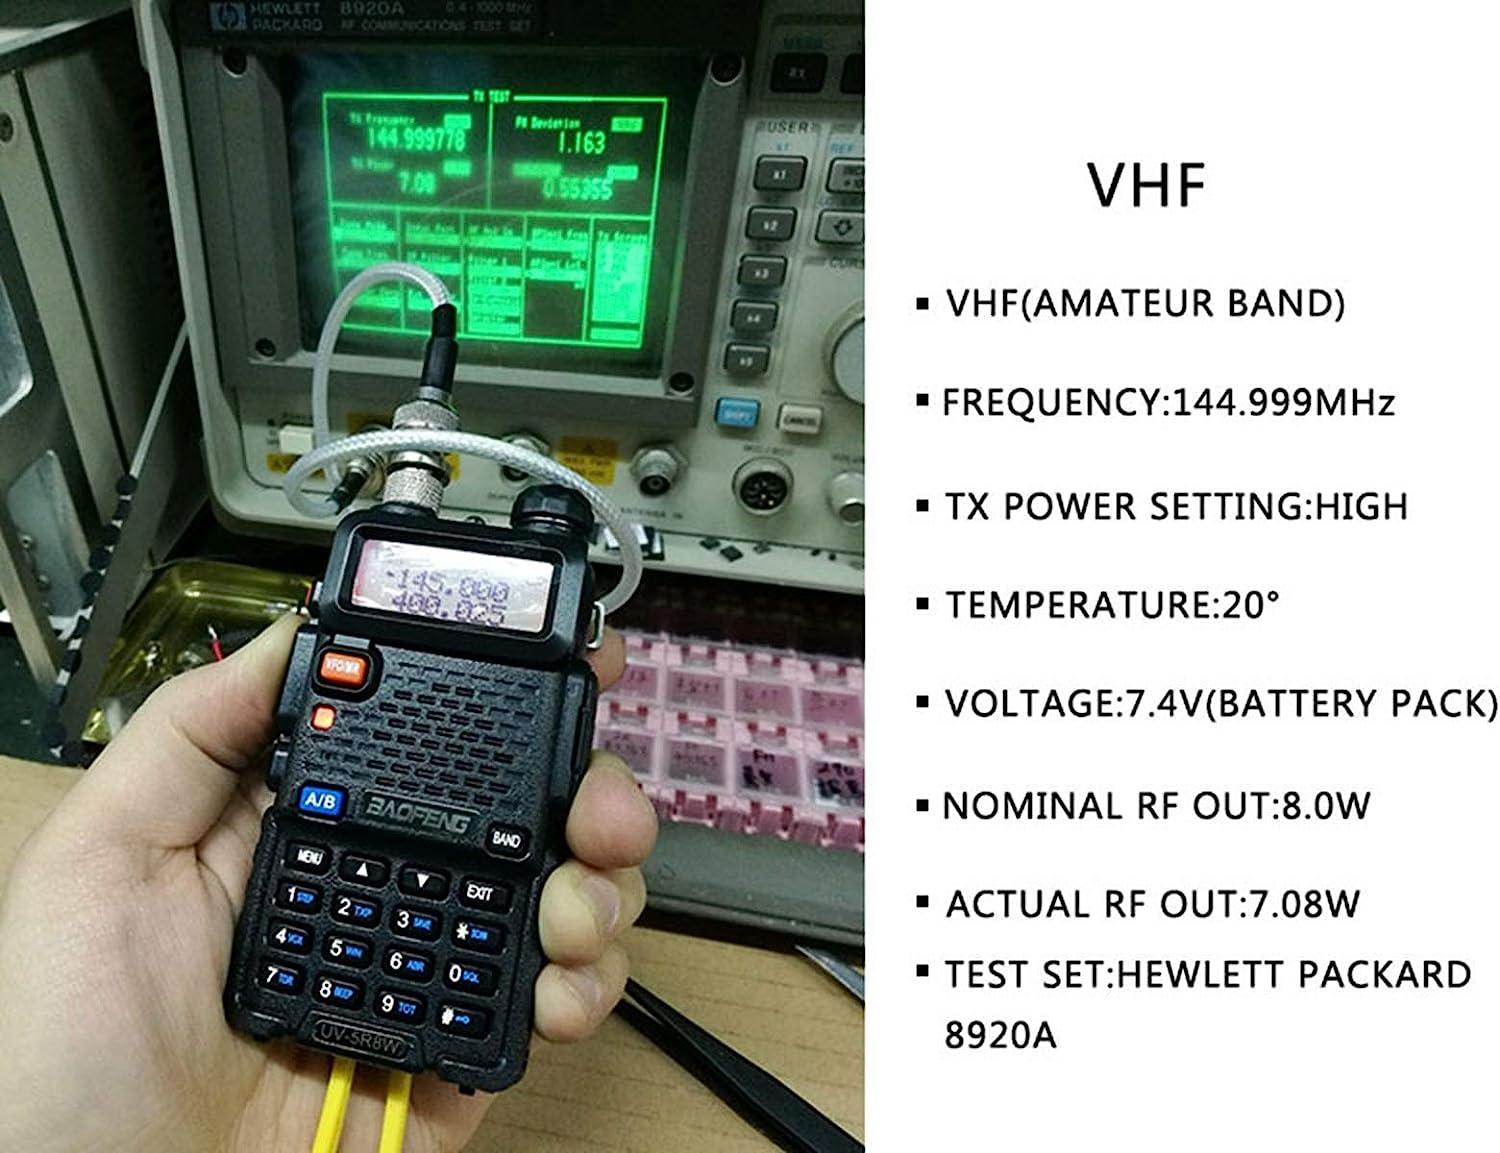 BaoFeng UV-5R 8W Ham Radio Handheld UV5R Dual Band Long Range Walkie  Talkies Two Way Radio Portable Tri-Power Radio(Black-8W 1Pack)